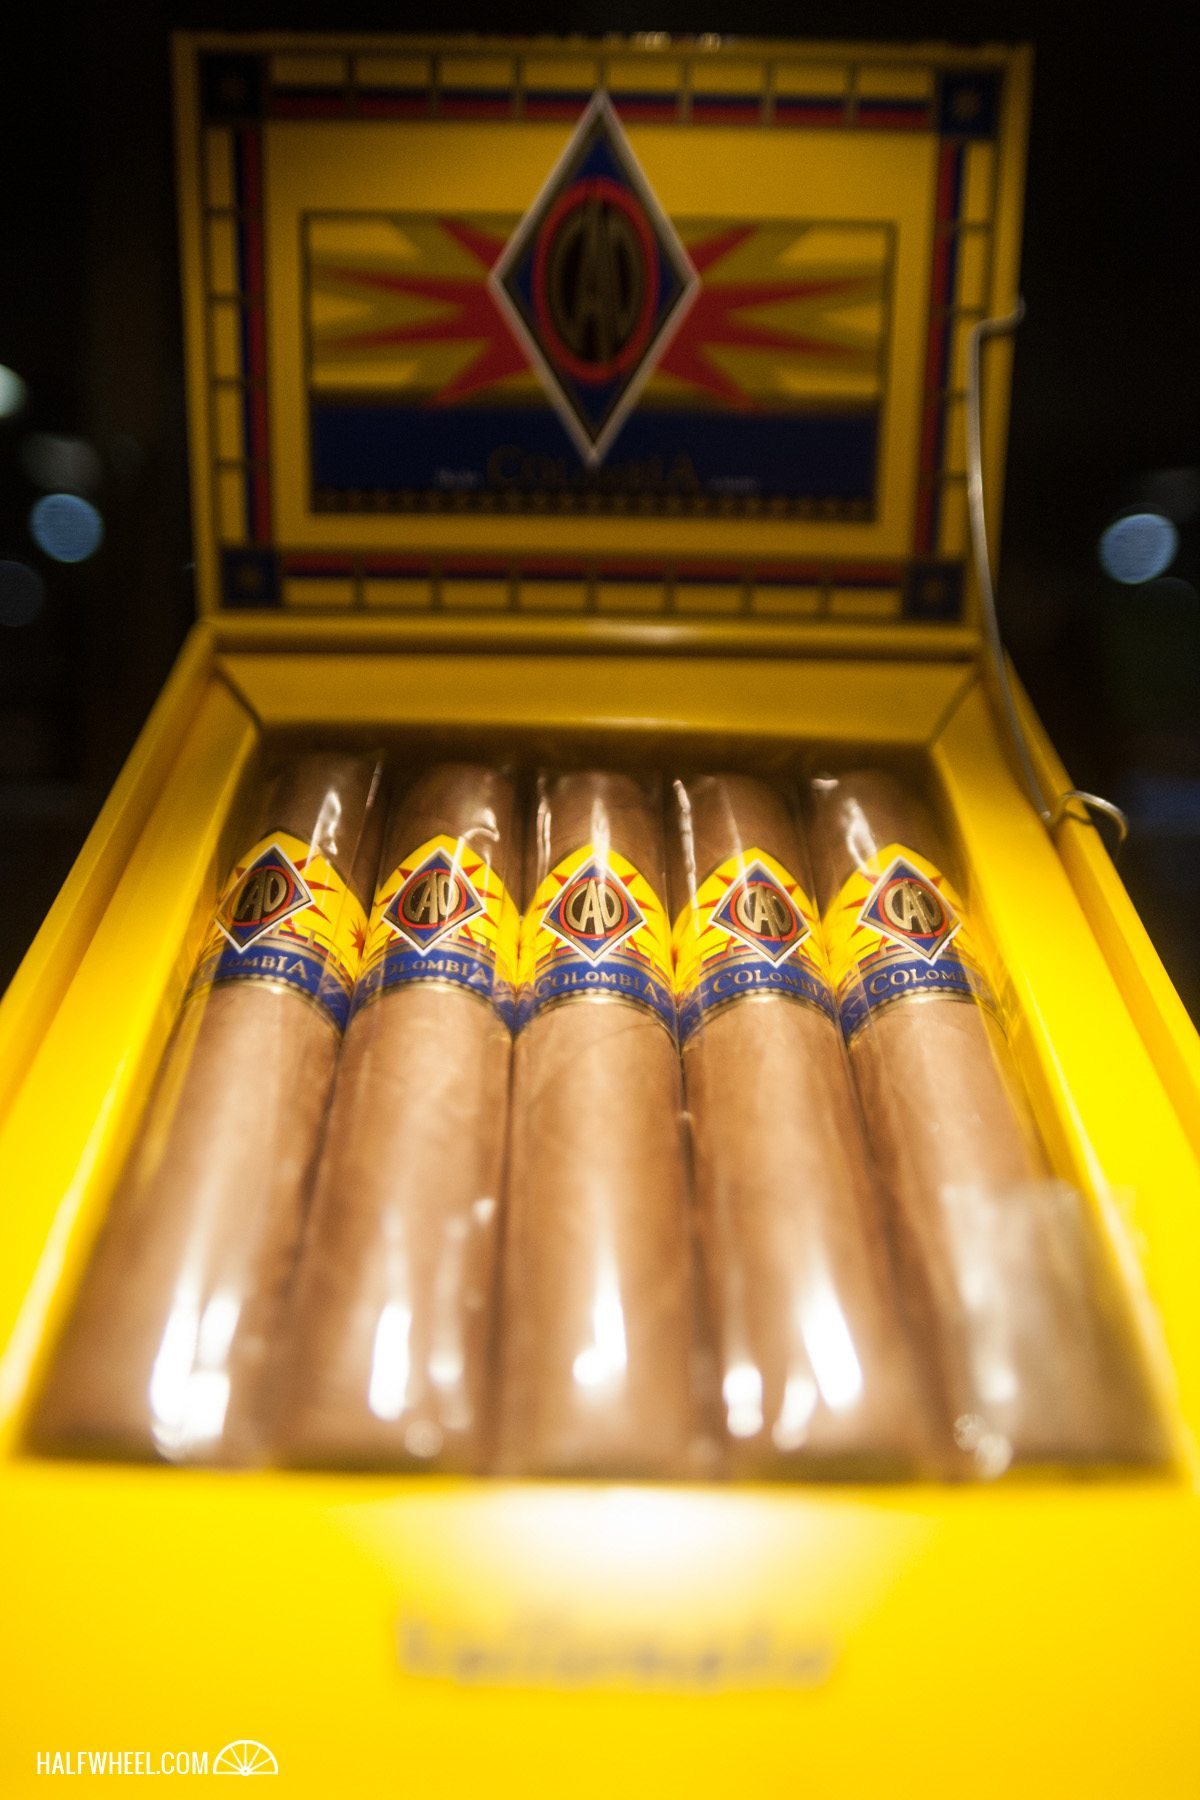 General Cigar IPCPR 2014-07